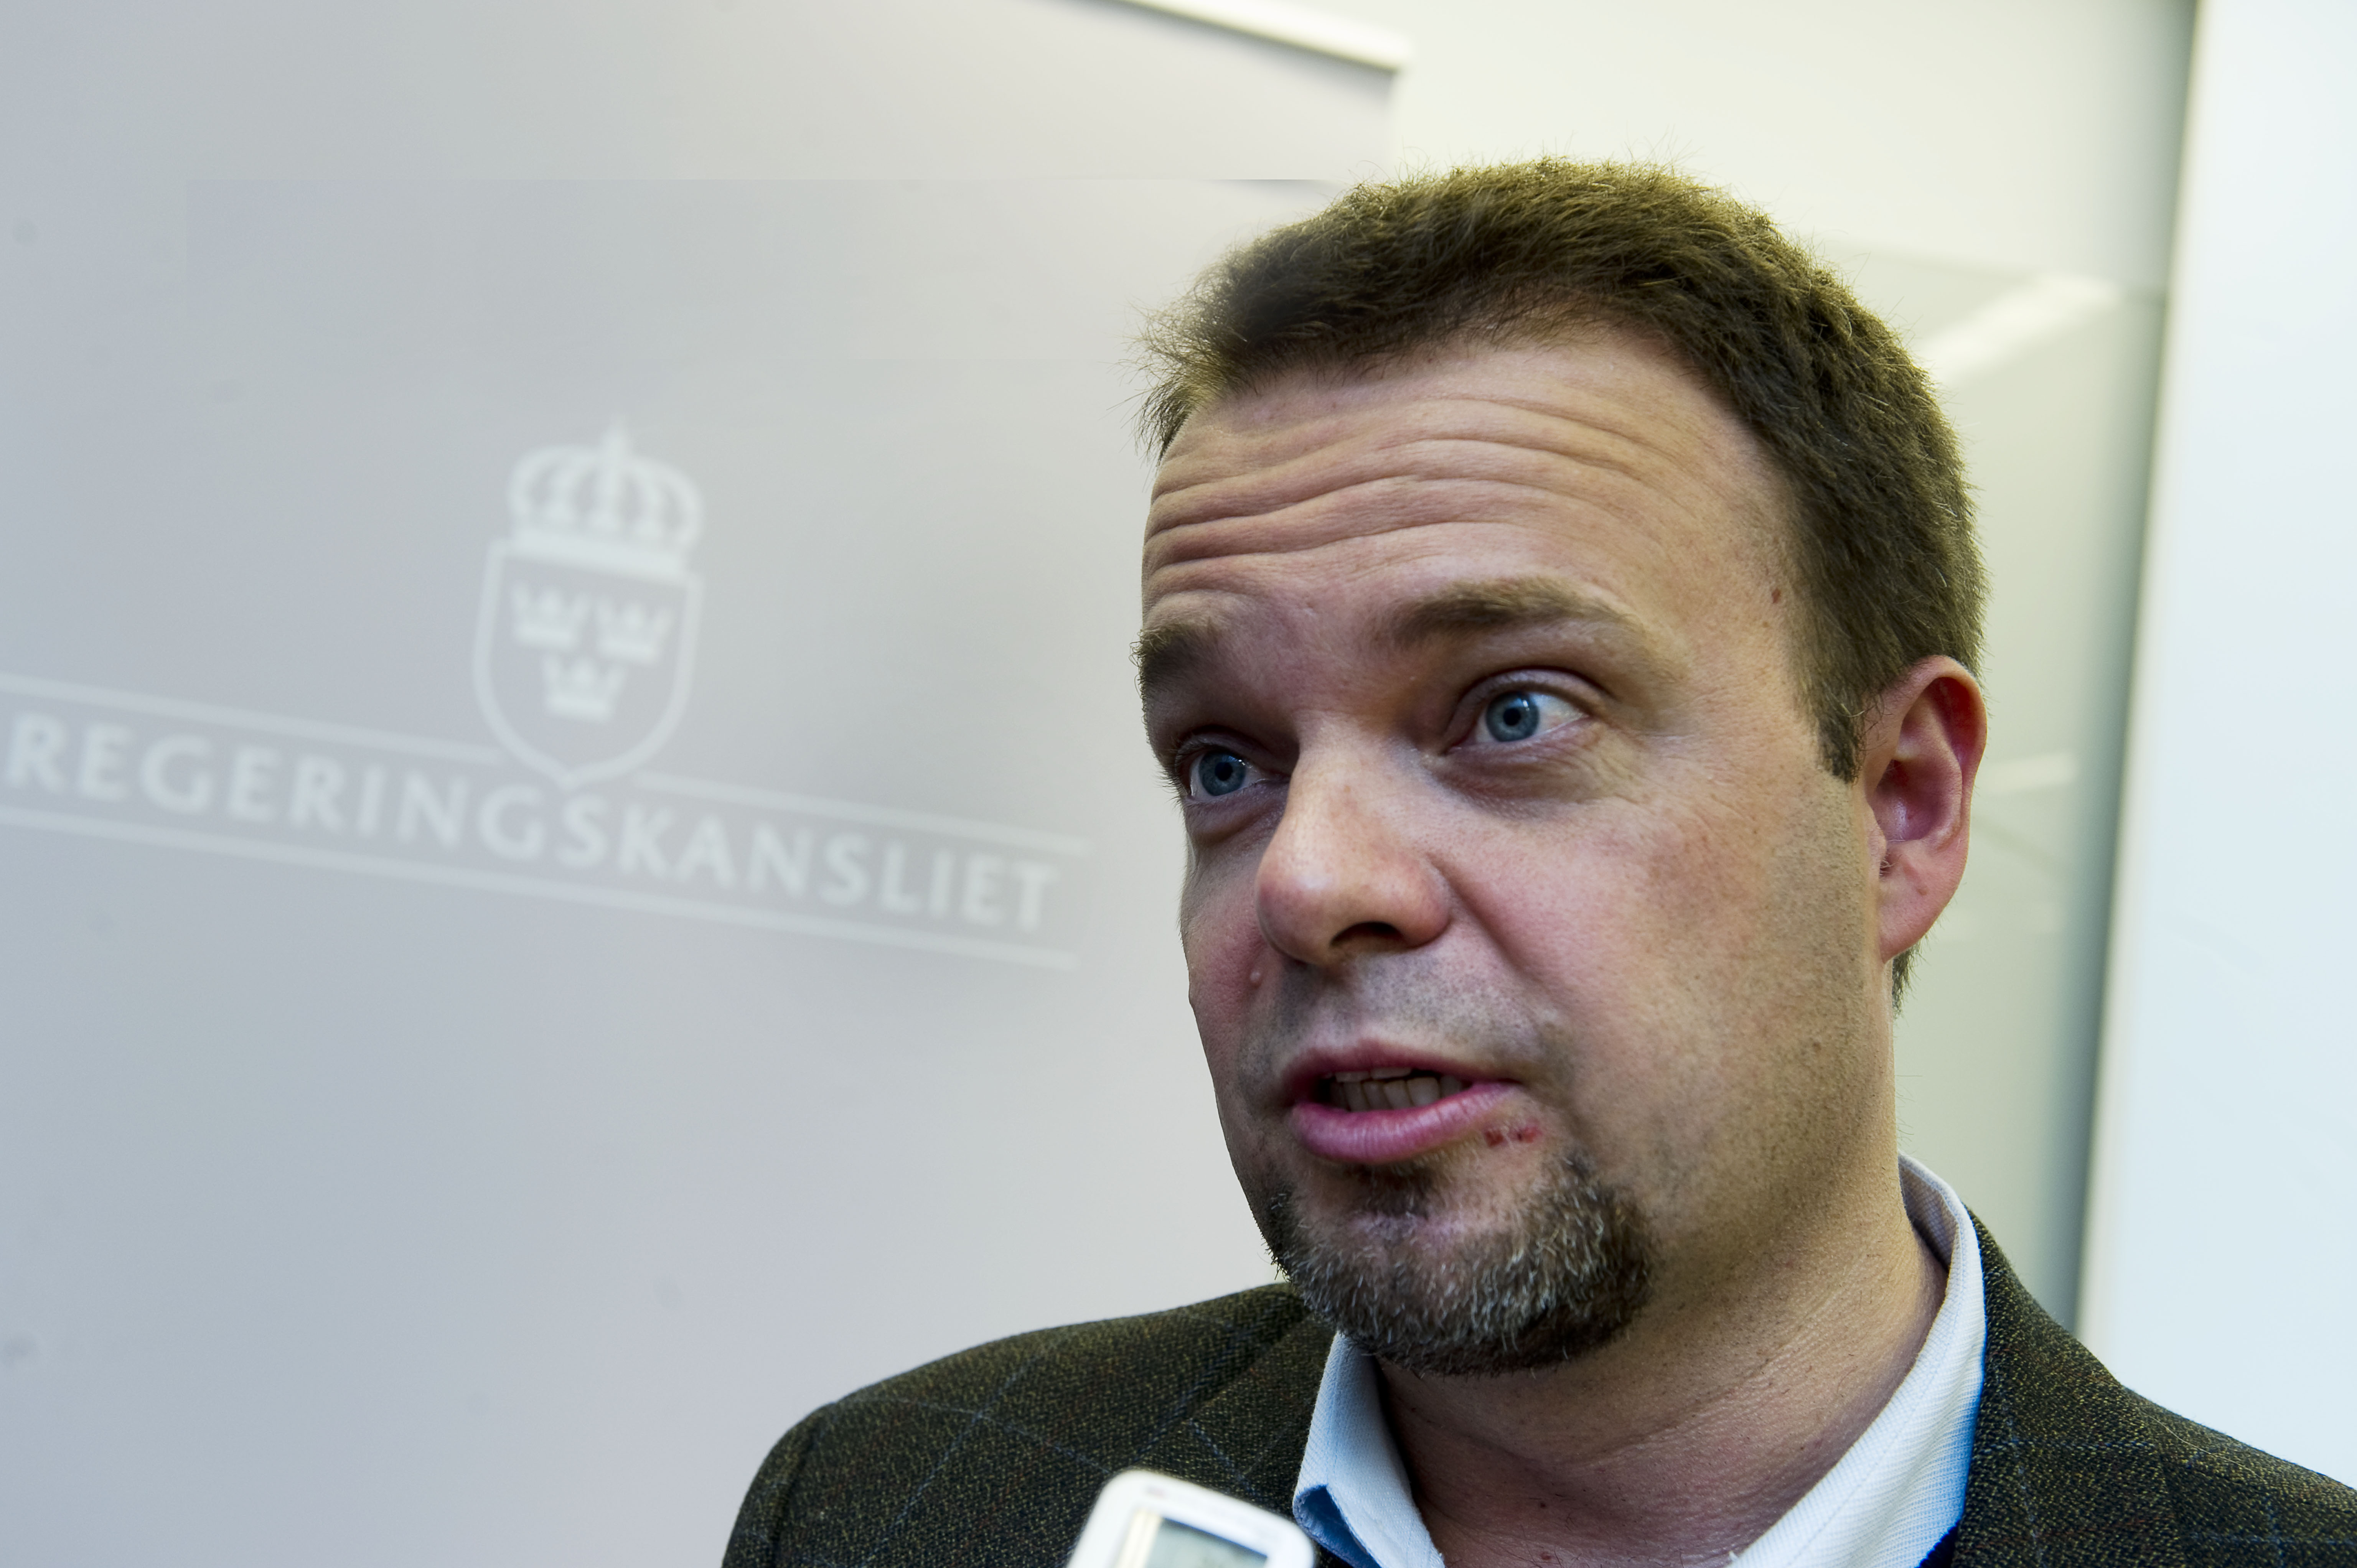 Riksdagsvalet 2010, Sven Otto Littorin, Politik, Register, Jobb, Alliansen, Ungdomsarbetslöshet